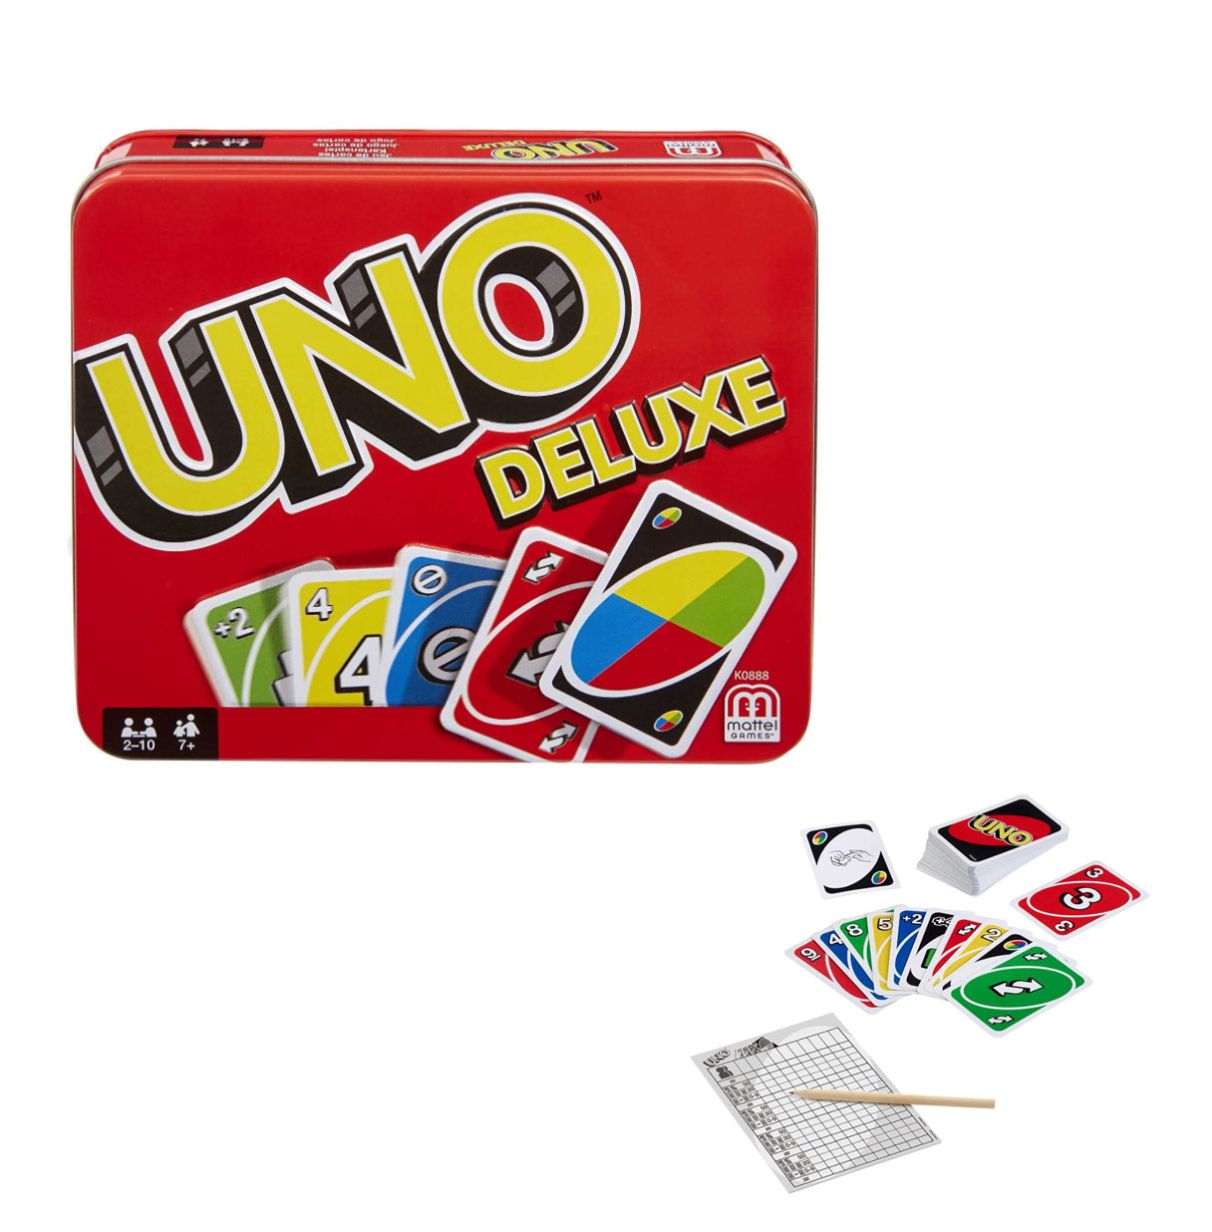 Mattel Games UNO classic, juego de cartas